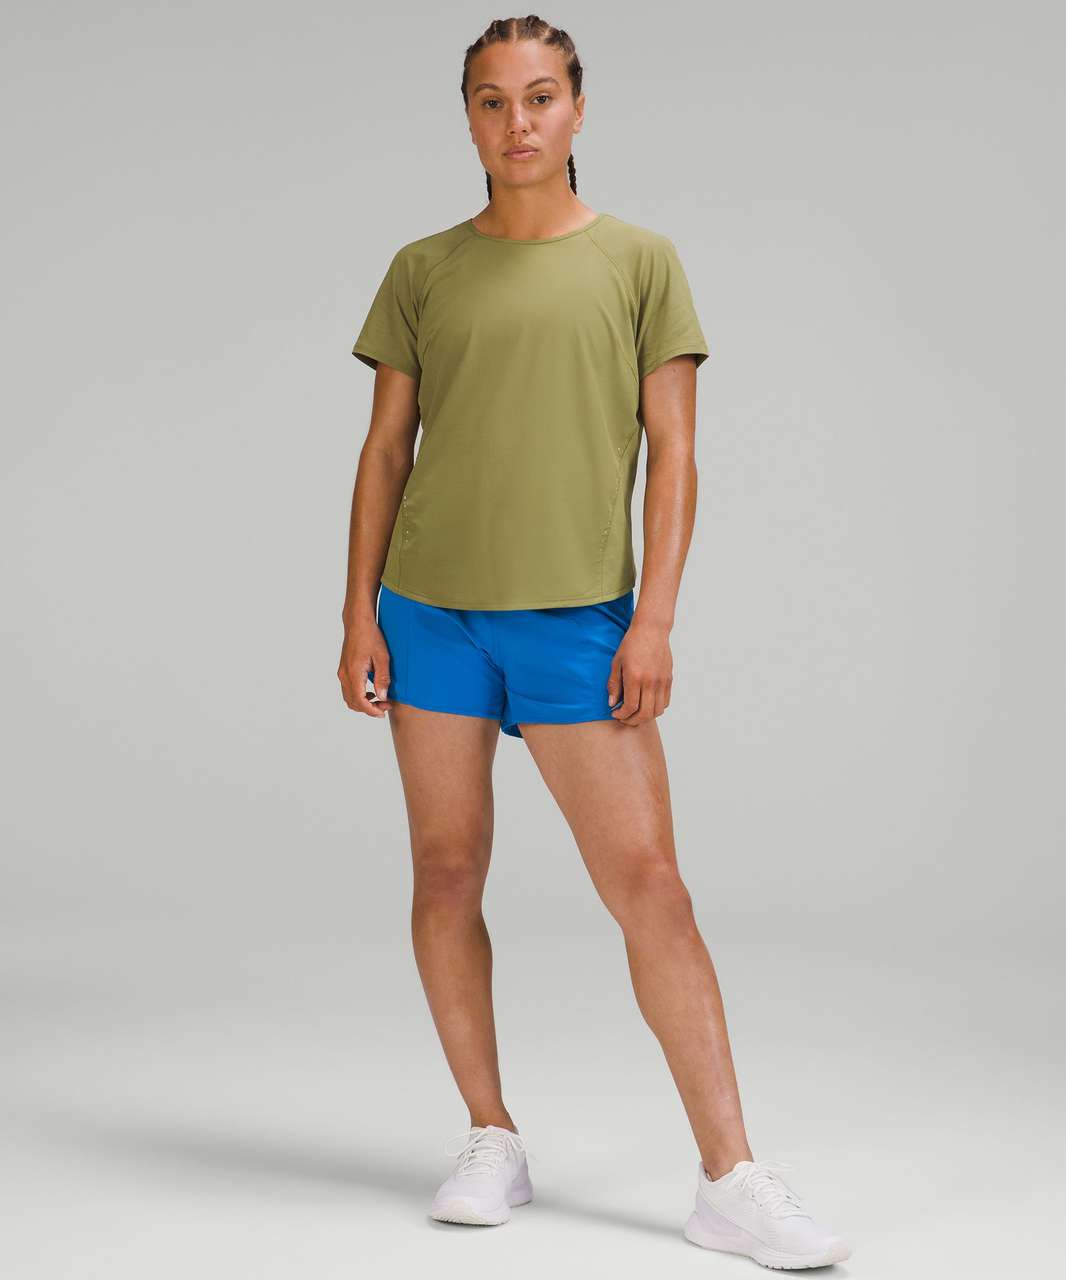 Lululemon Lightweight Stretch Running Short Sleeve Shirt - Bronze Green